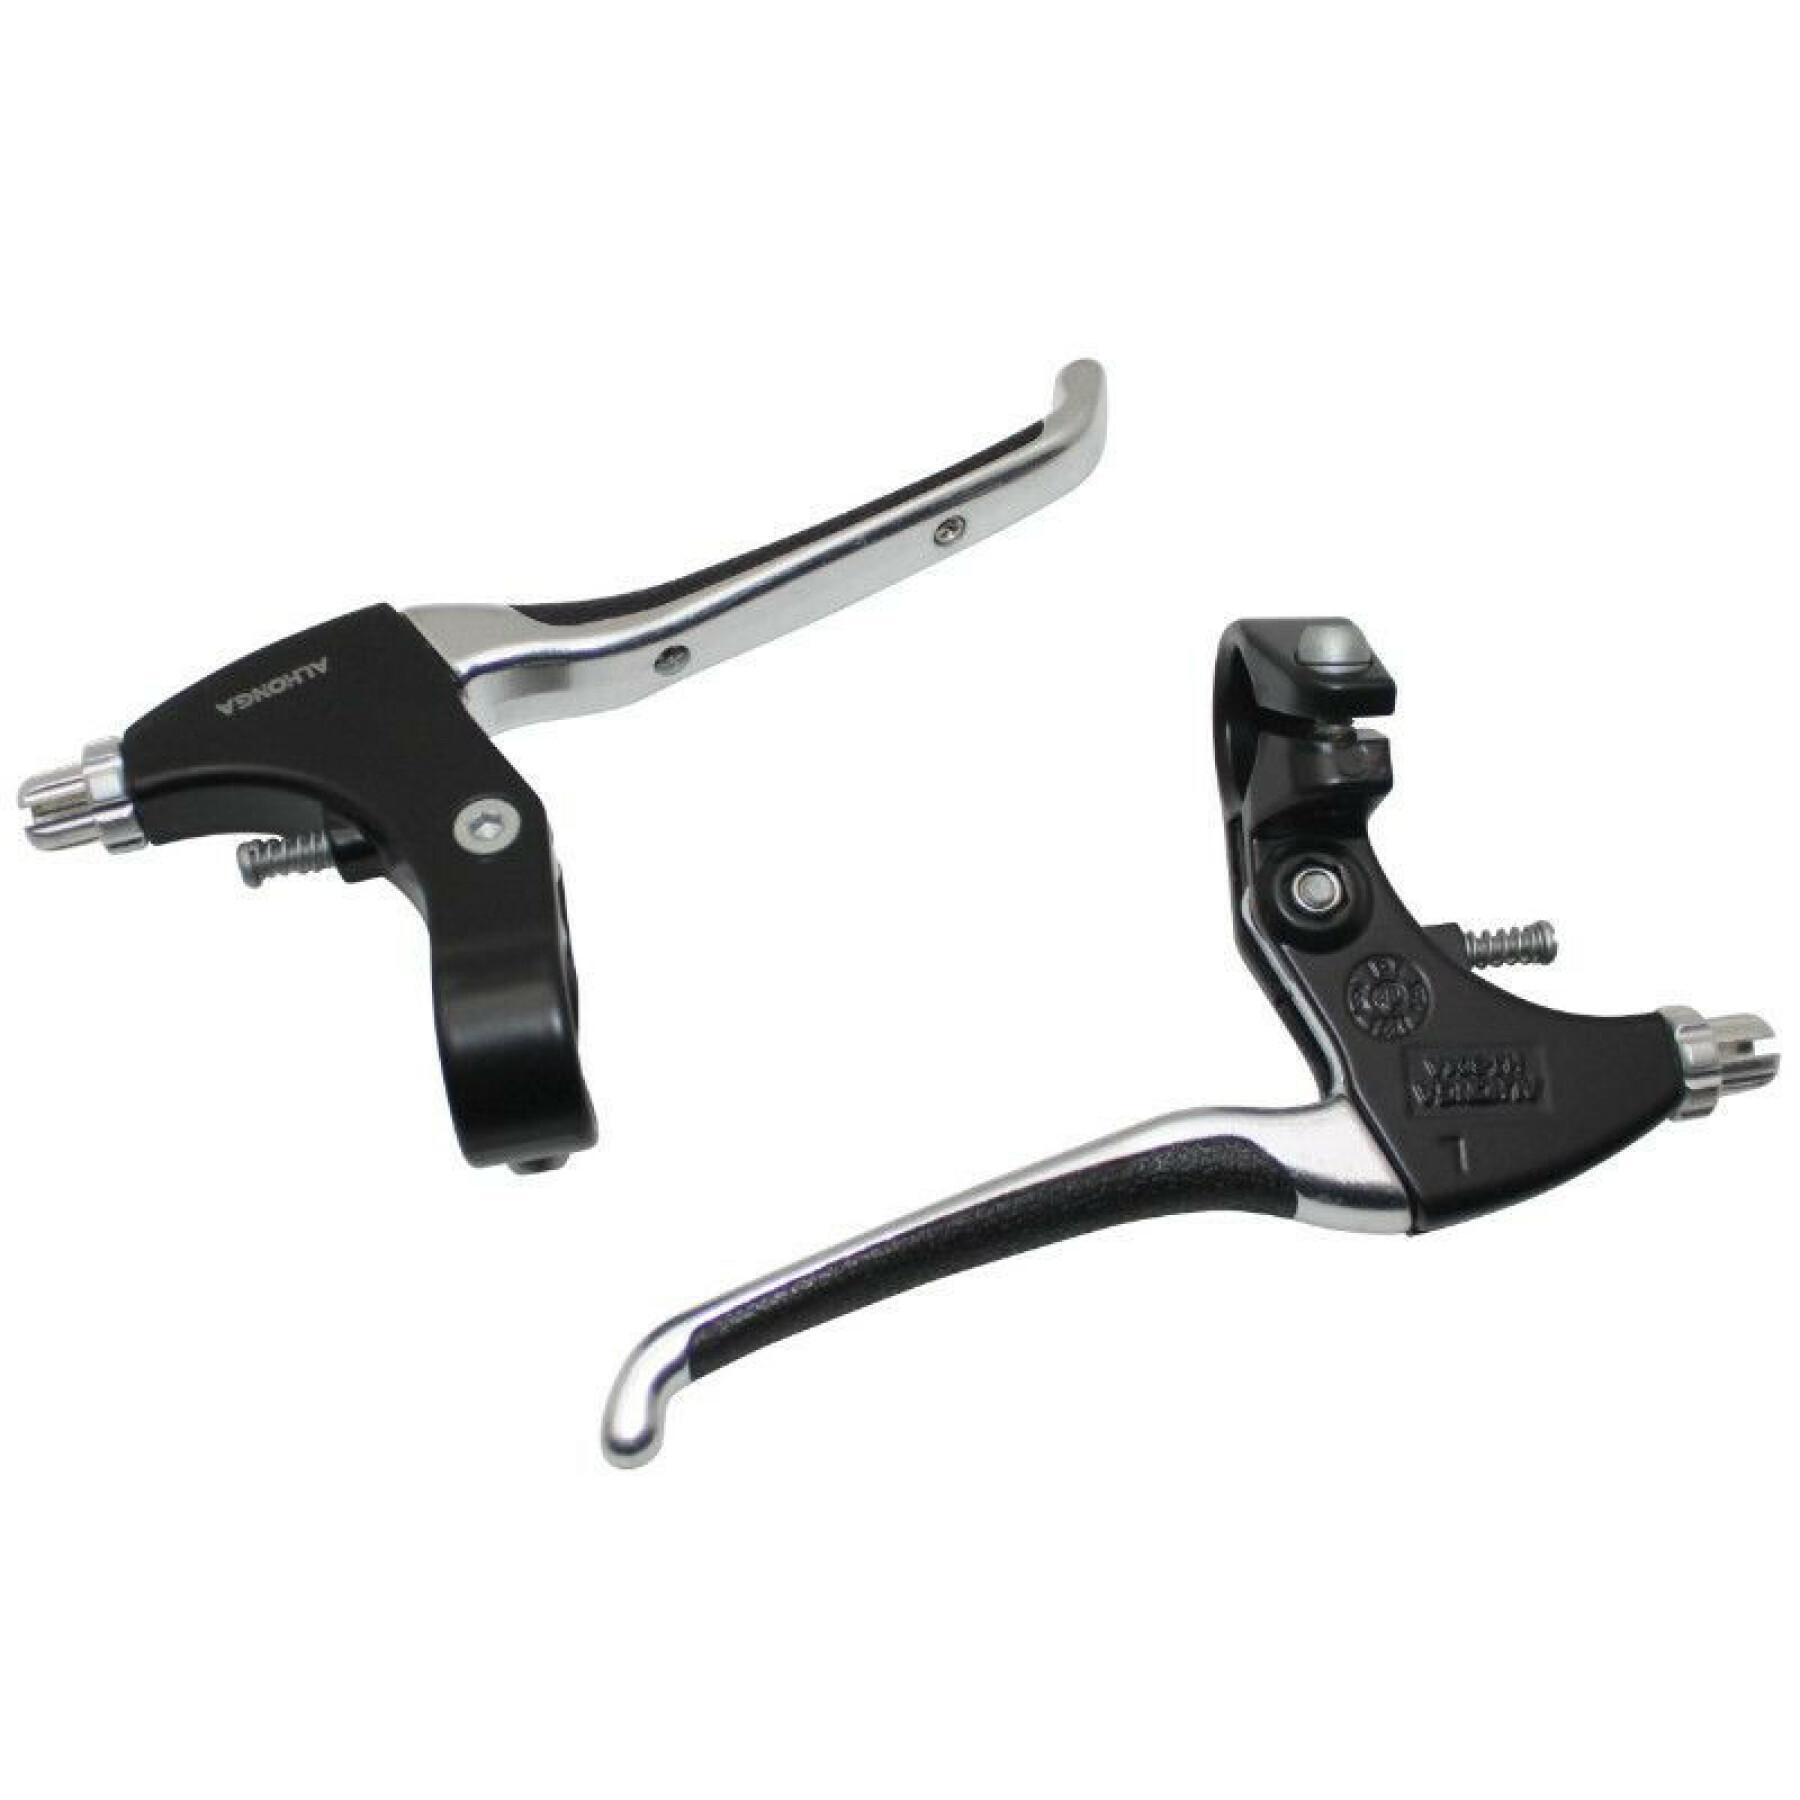 Pair of brake levers for mountain bike 3 fingers comfort soft Newton V-Brake